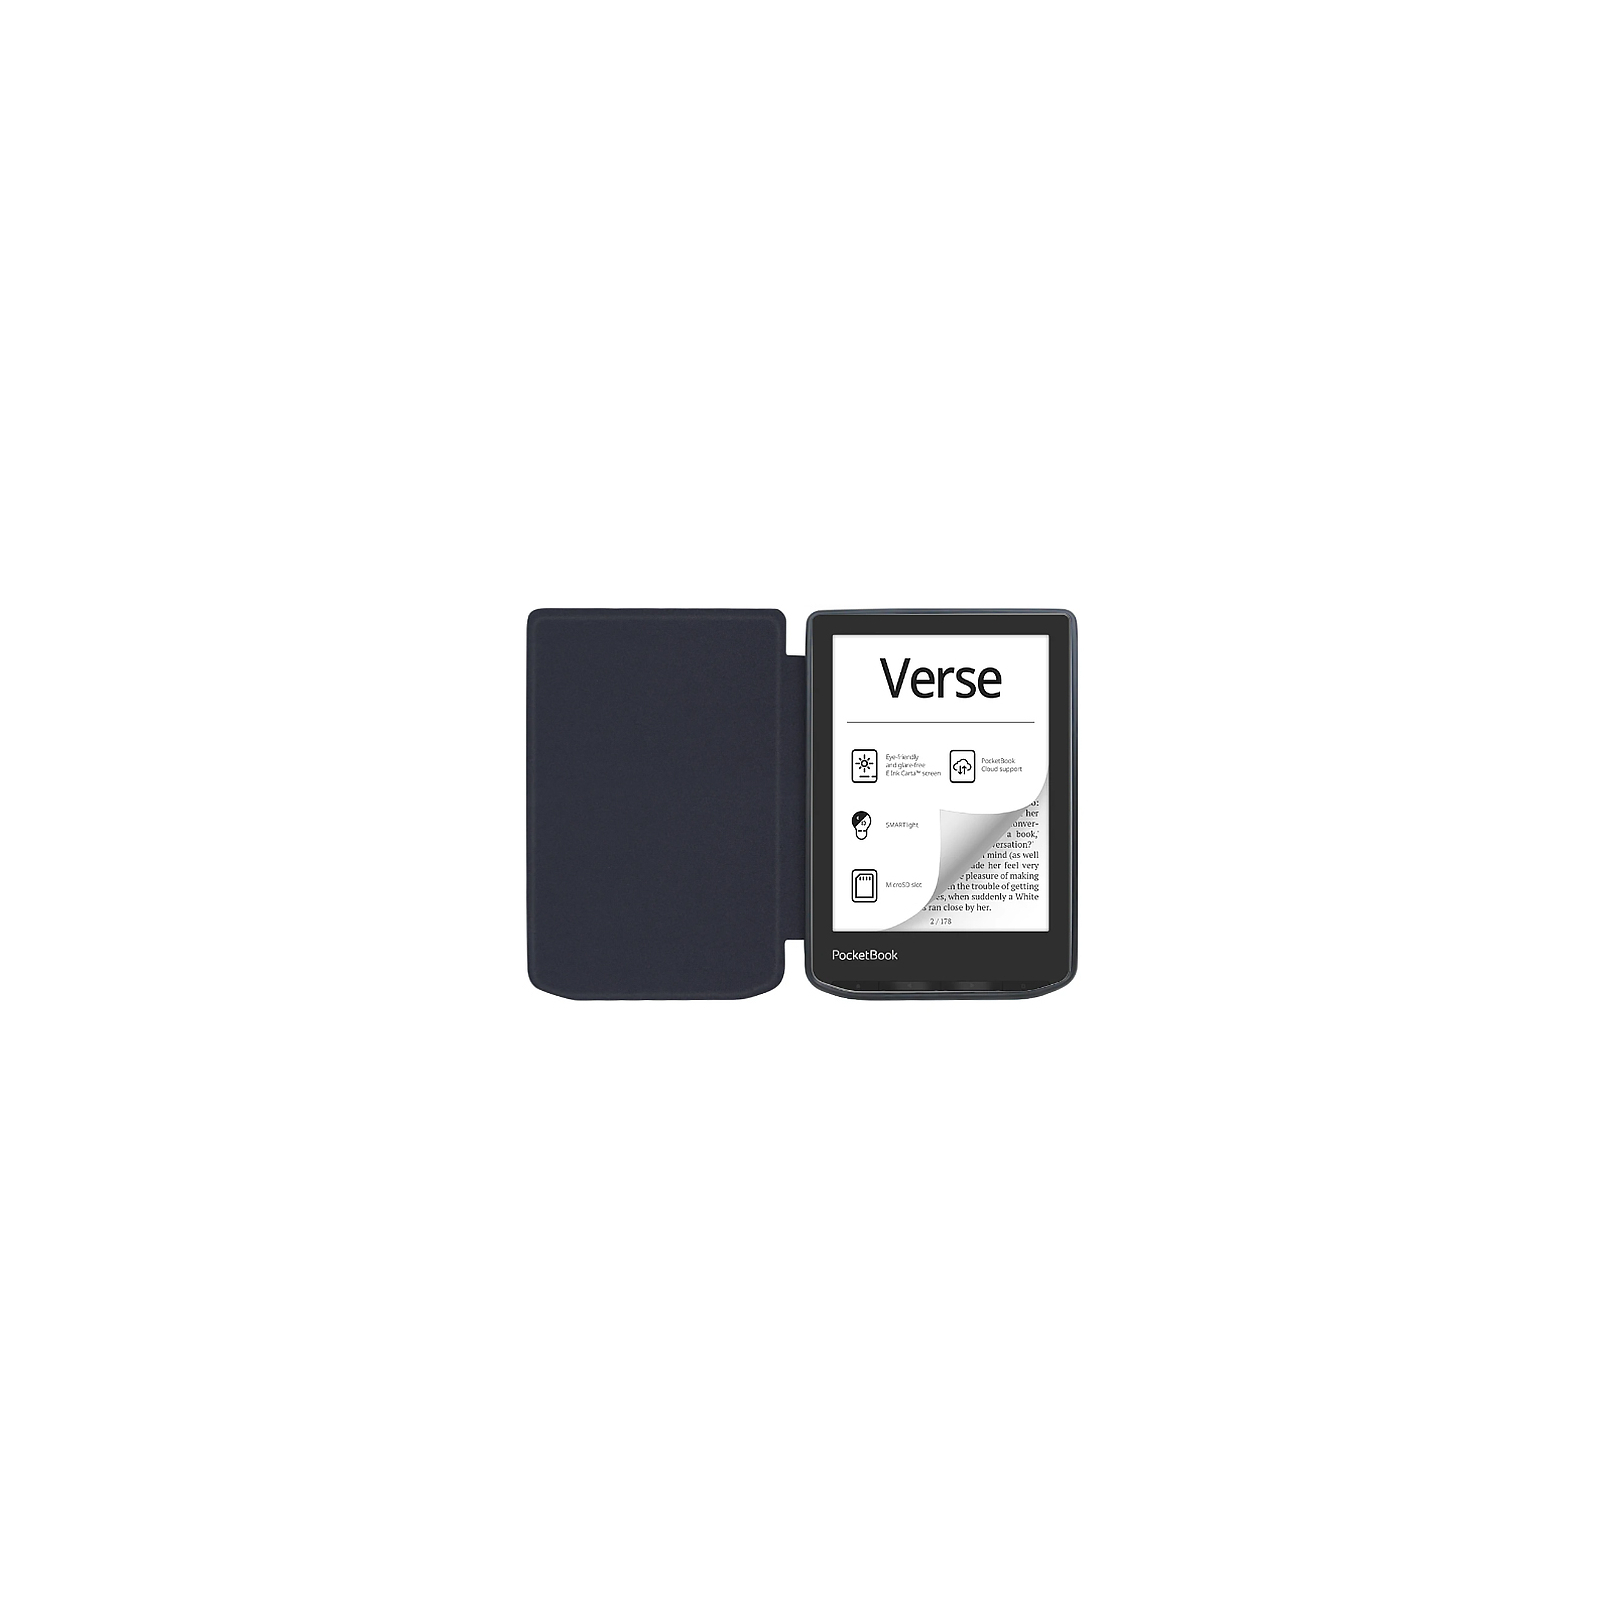 Чехол для электронной книги BeCover Smart Case PocketBook 629 Verse / 634 Verse Pro 6" Library (710974) изображение 8